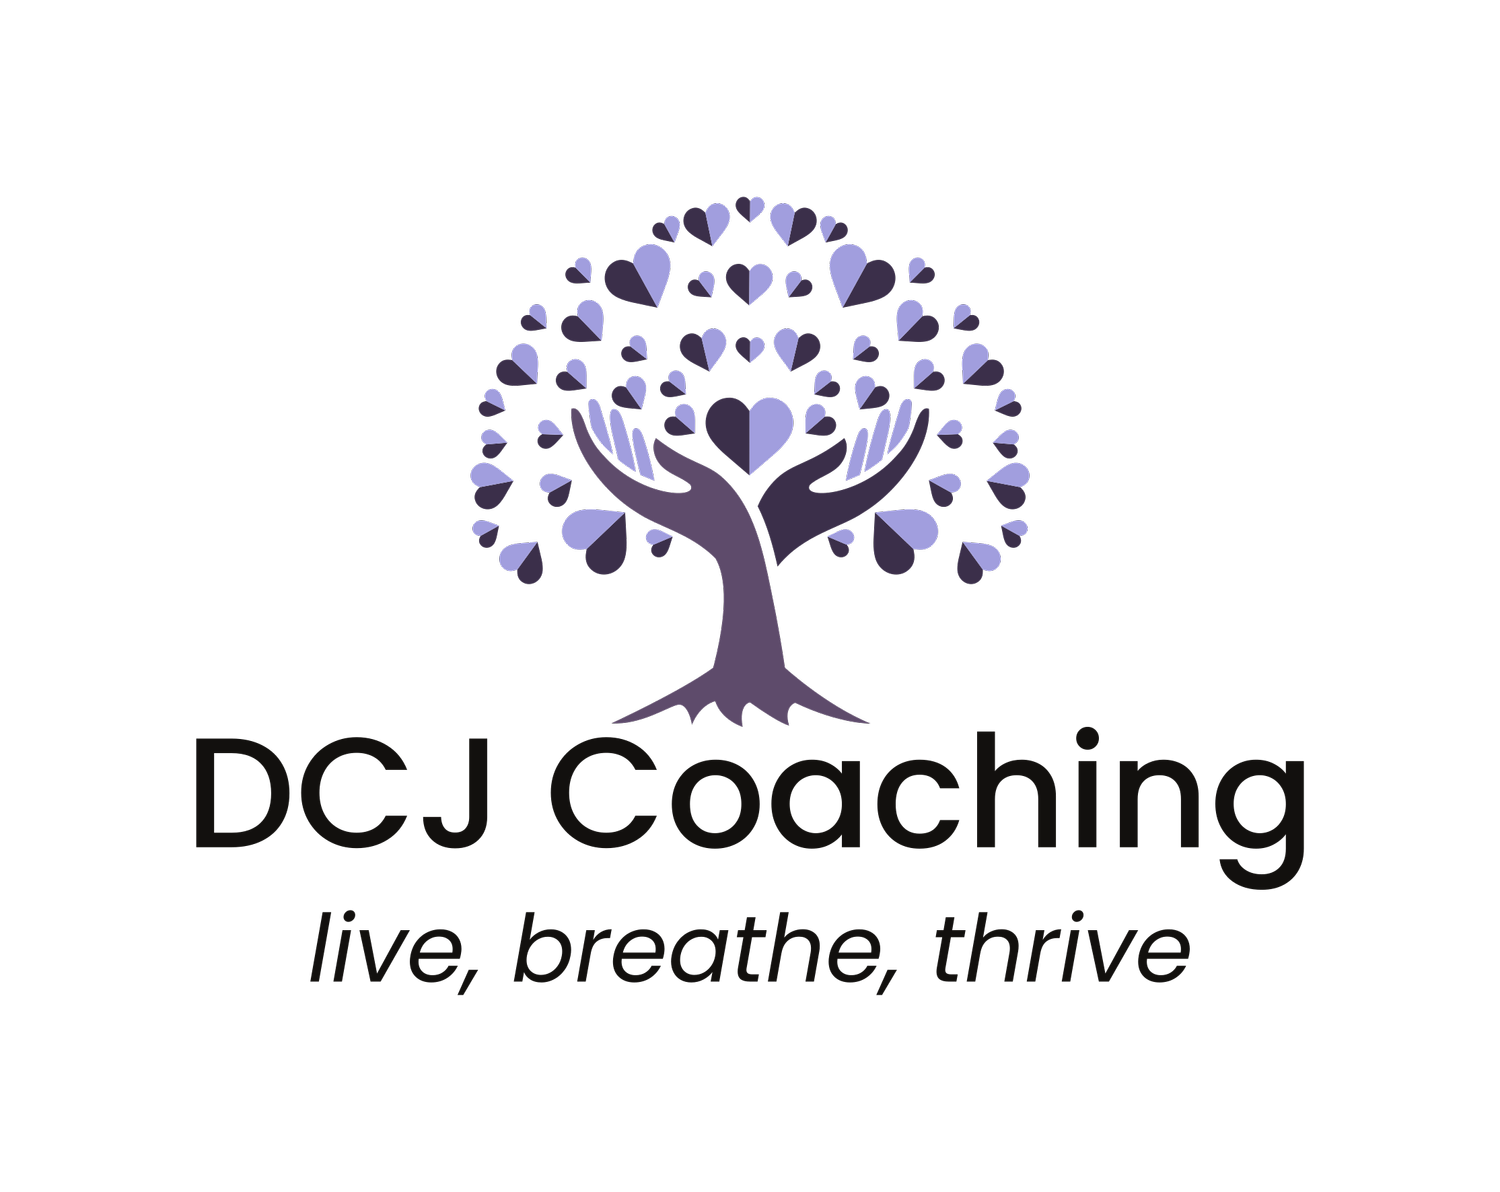 DCJ Coaching